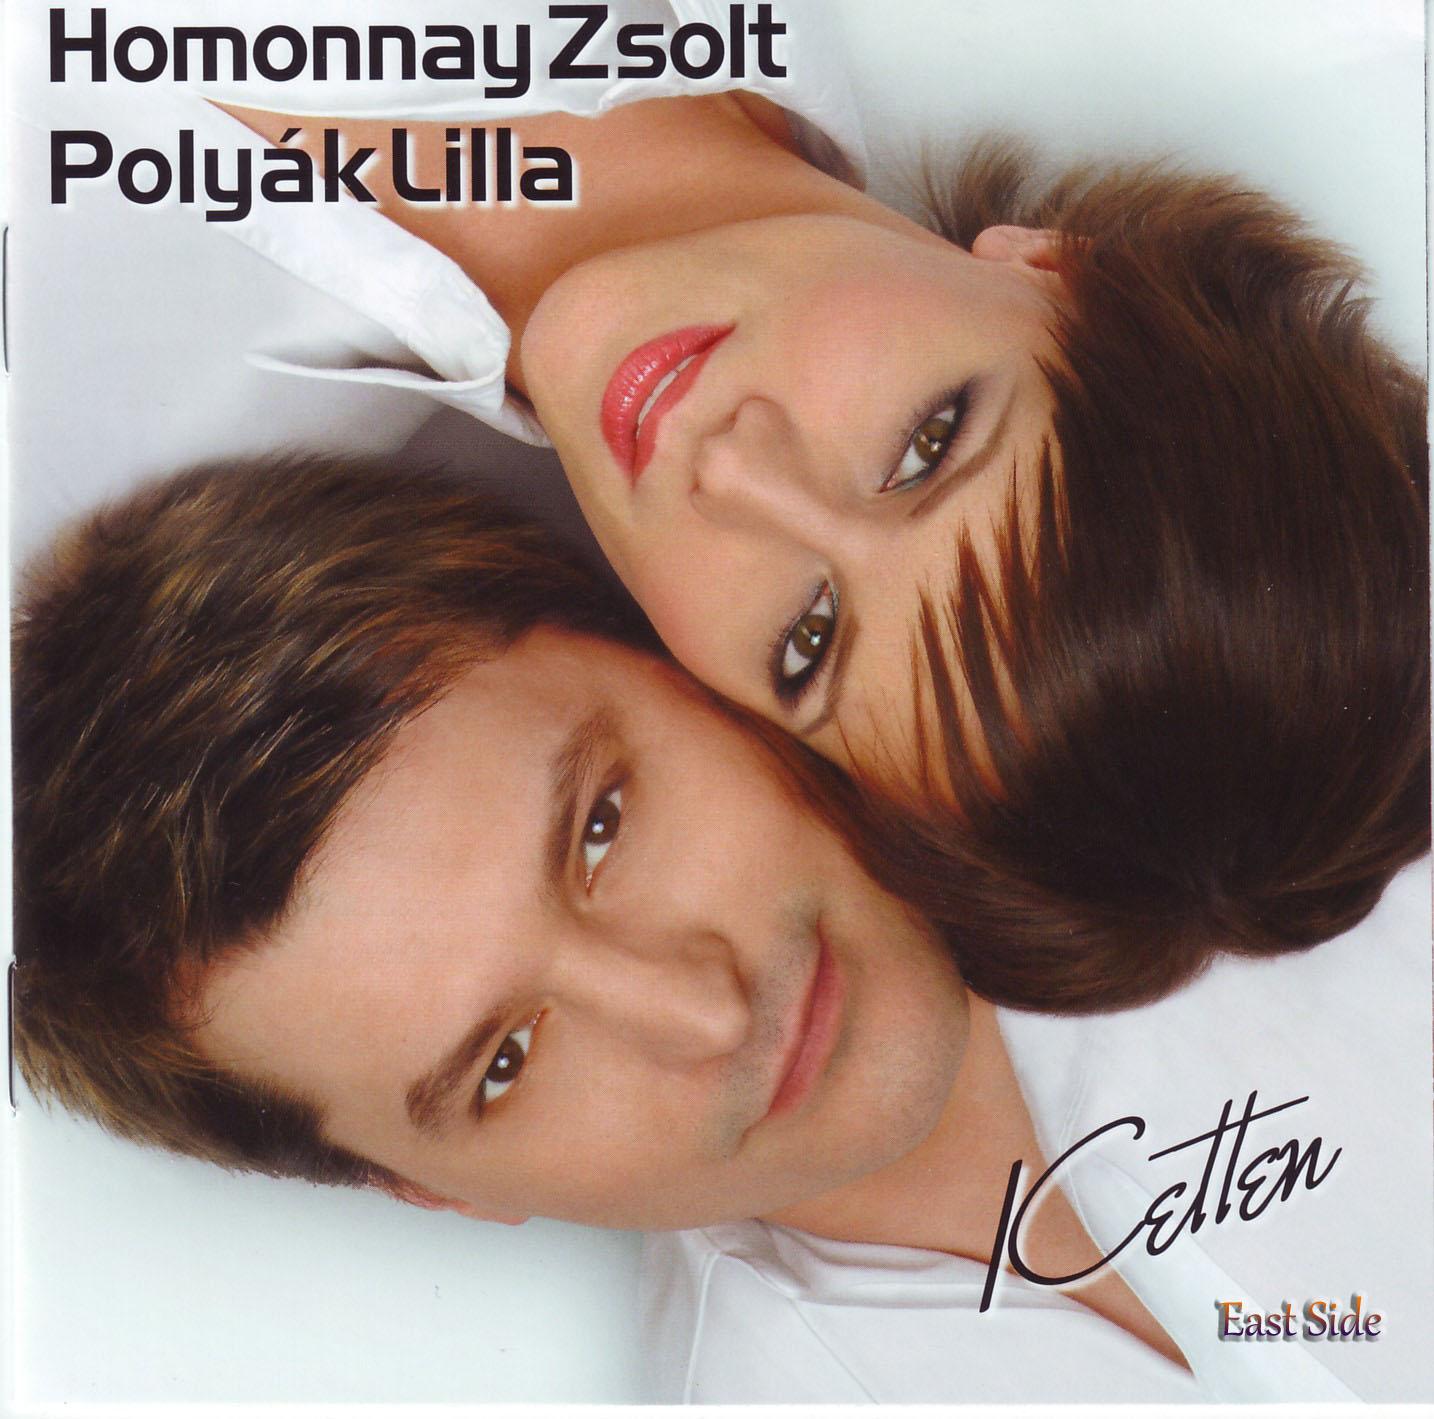 Homonnay Zsolt & Polyák Lilla Ketten